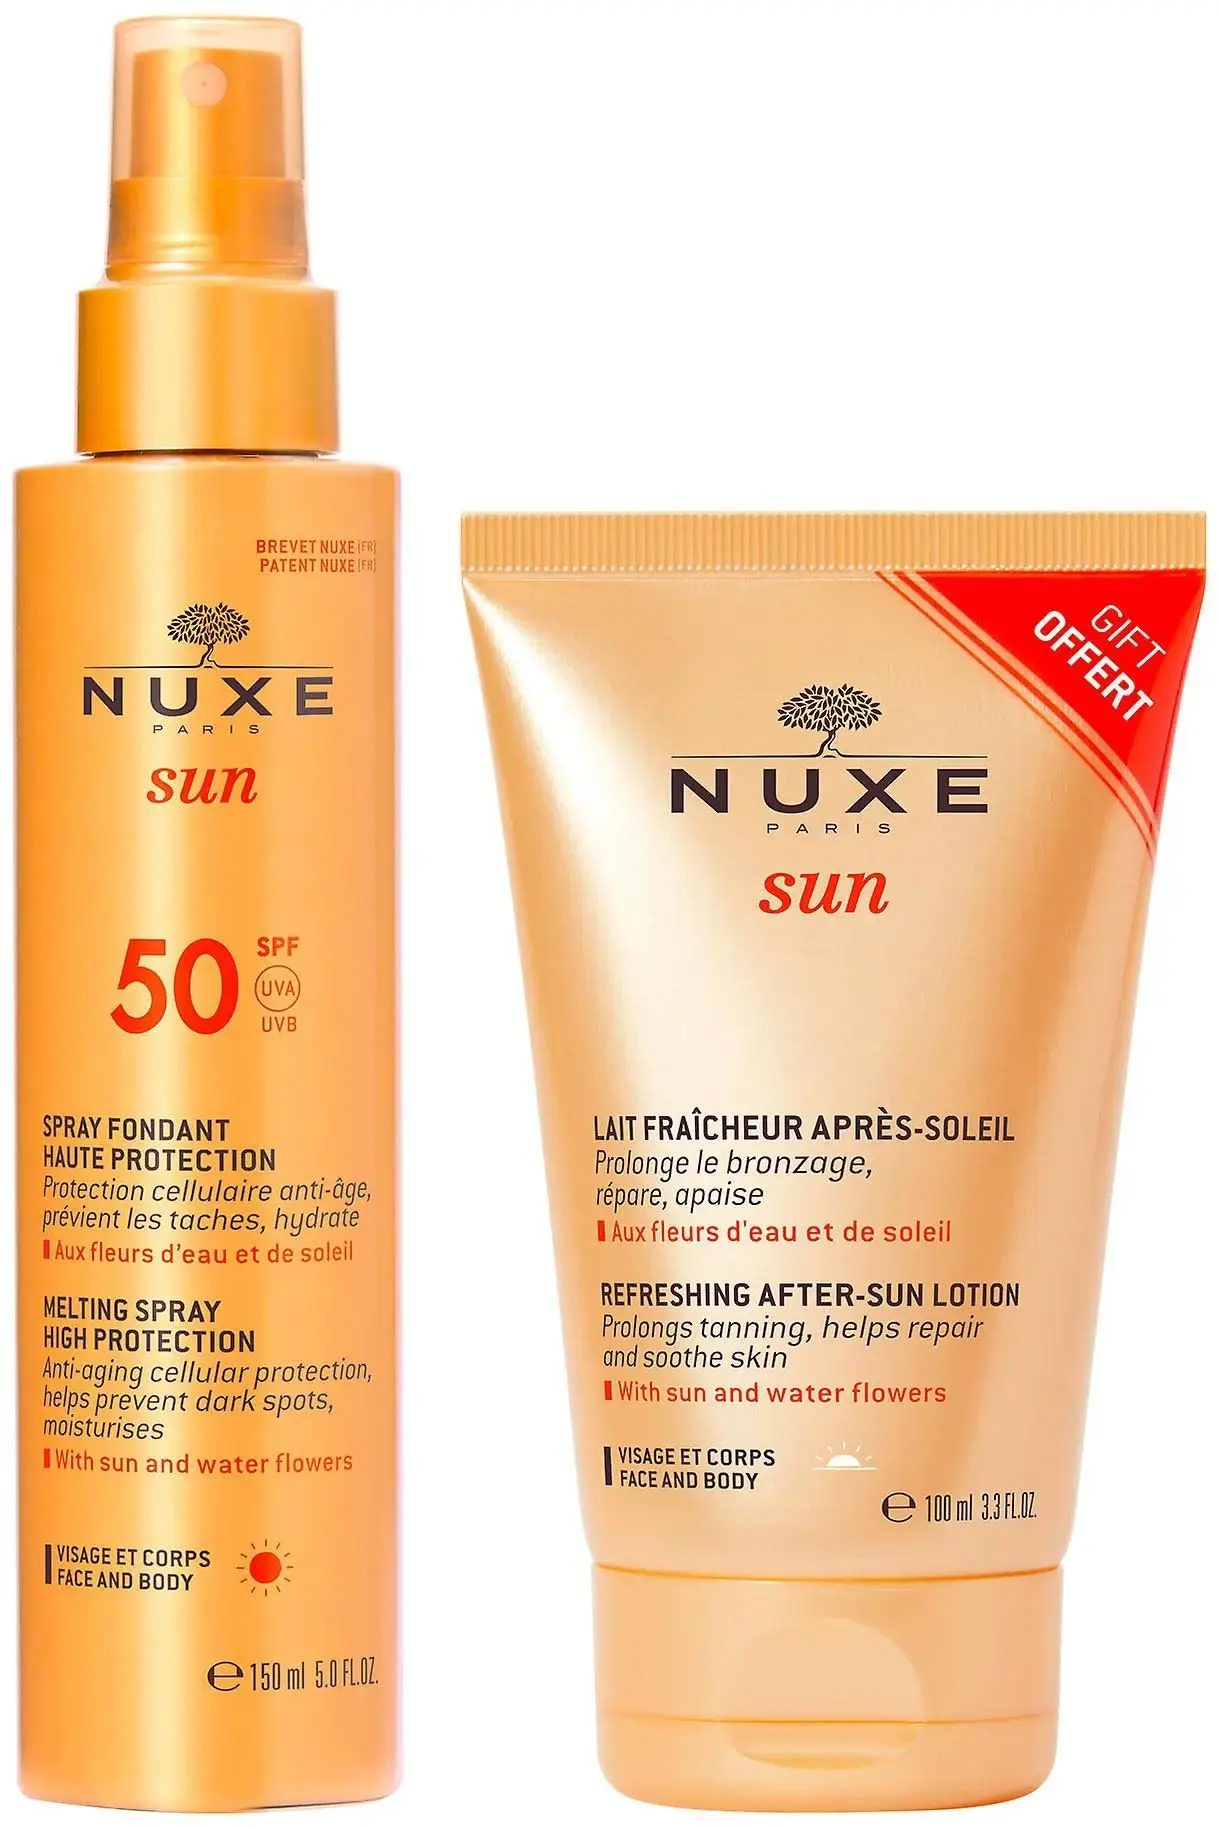 Nuxe Sun Spray Fondant SPF50 Promo